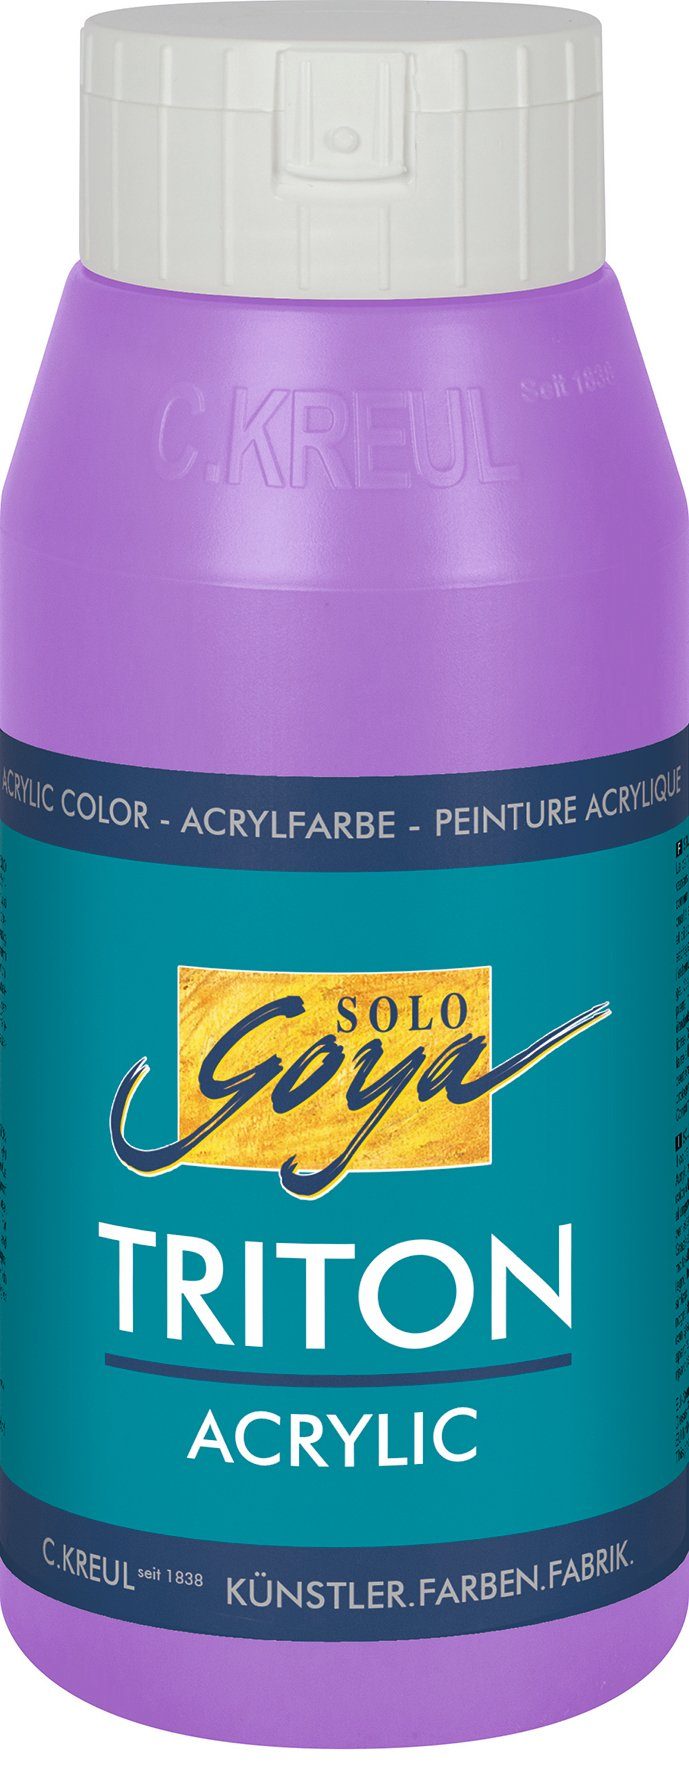 Kreul Acrylfarbe Solo Goya Triton 750 Flieder Acrylic, ml